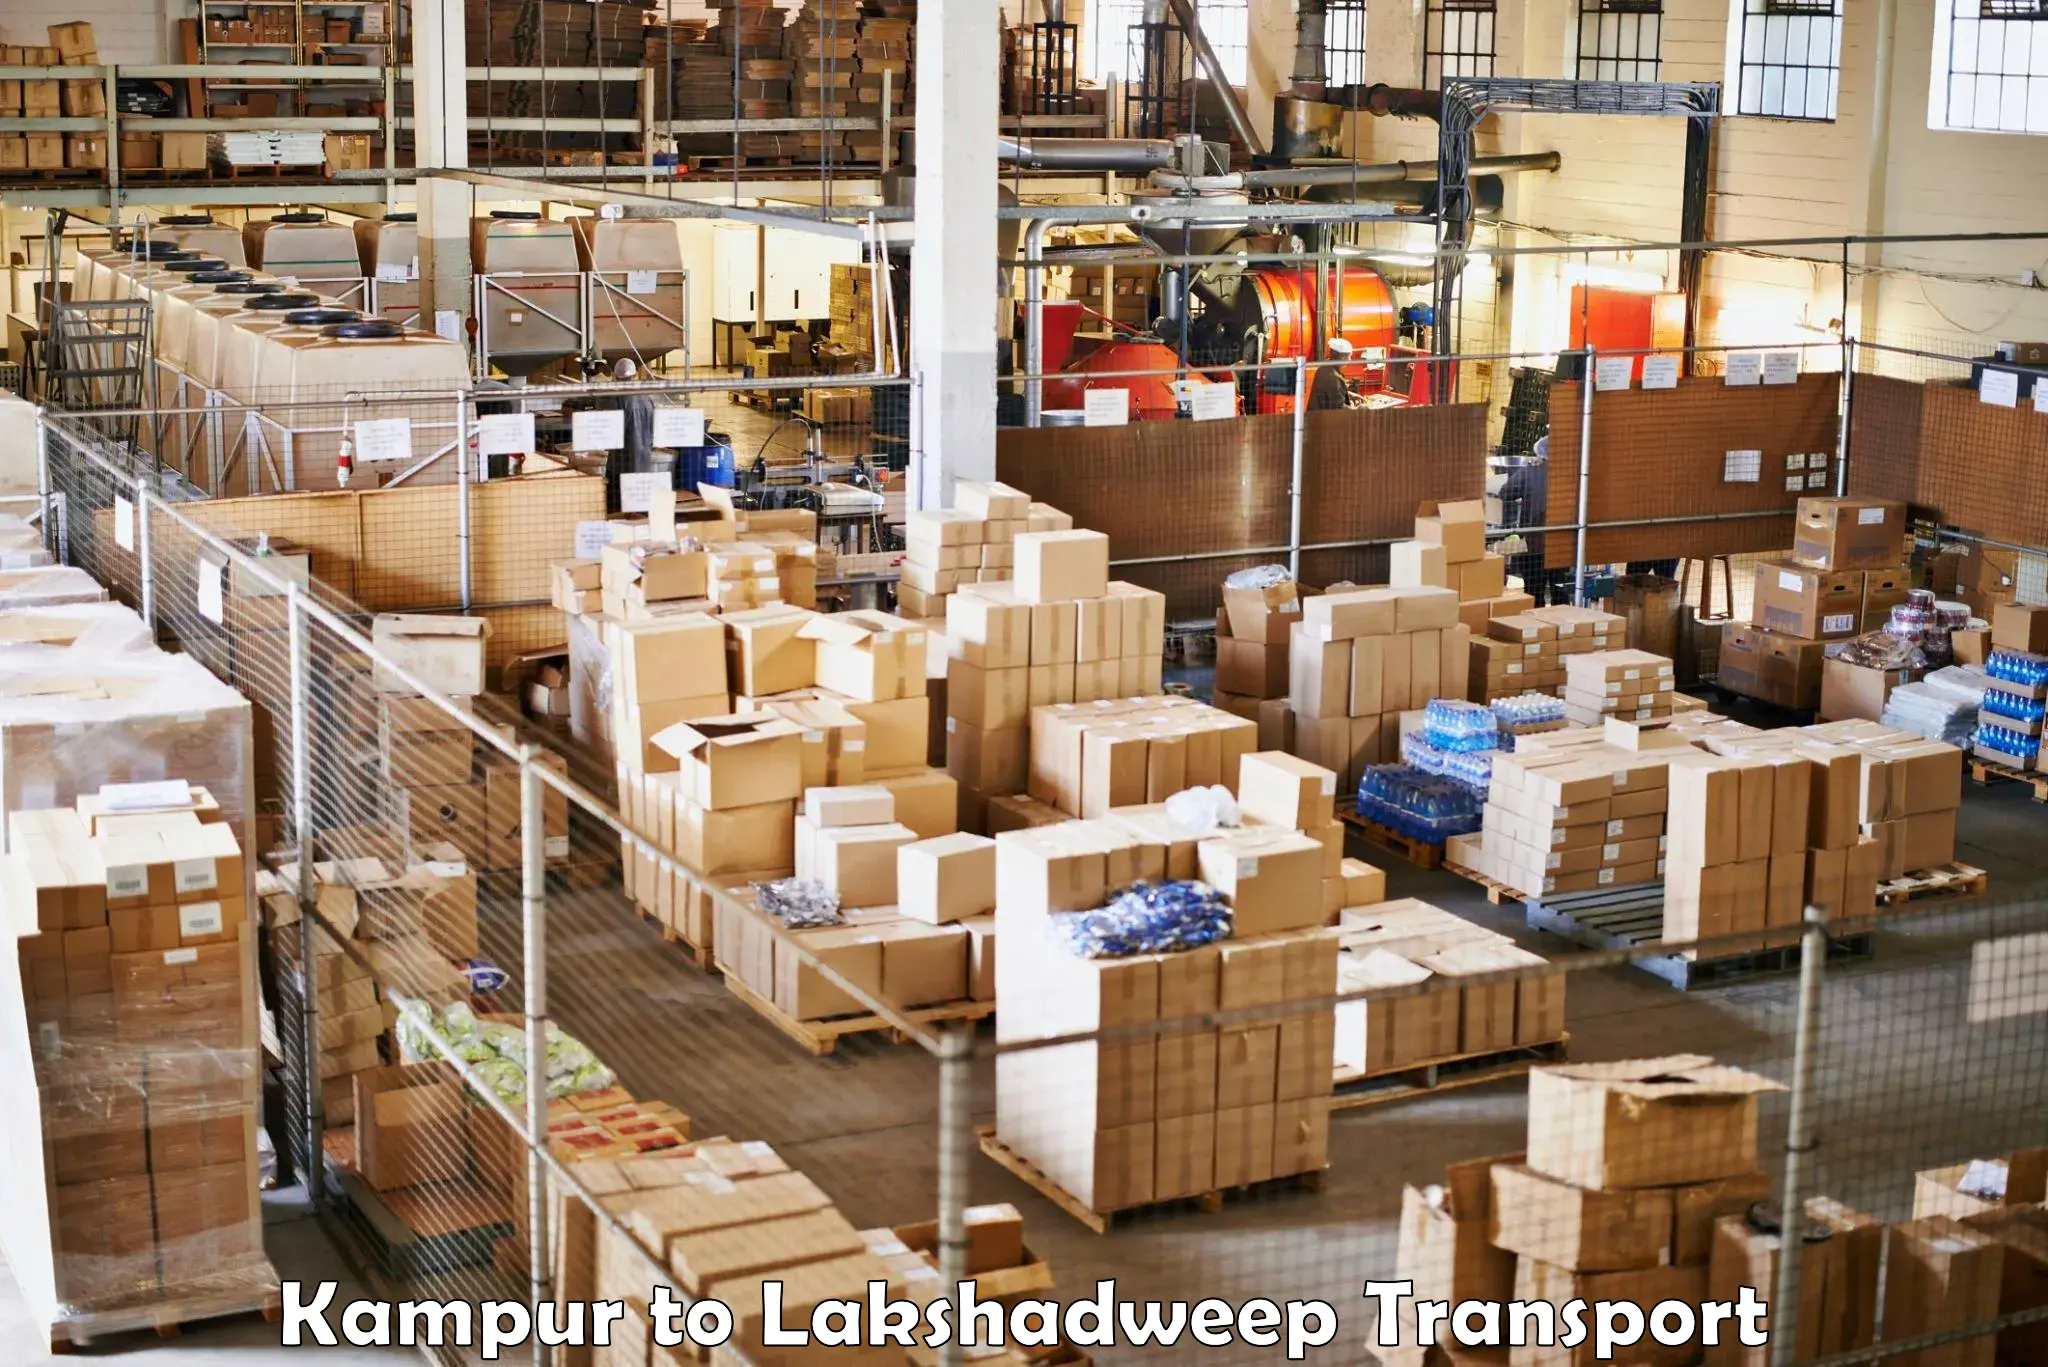 Furniture transport service Kampur to Lakshadweep